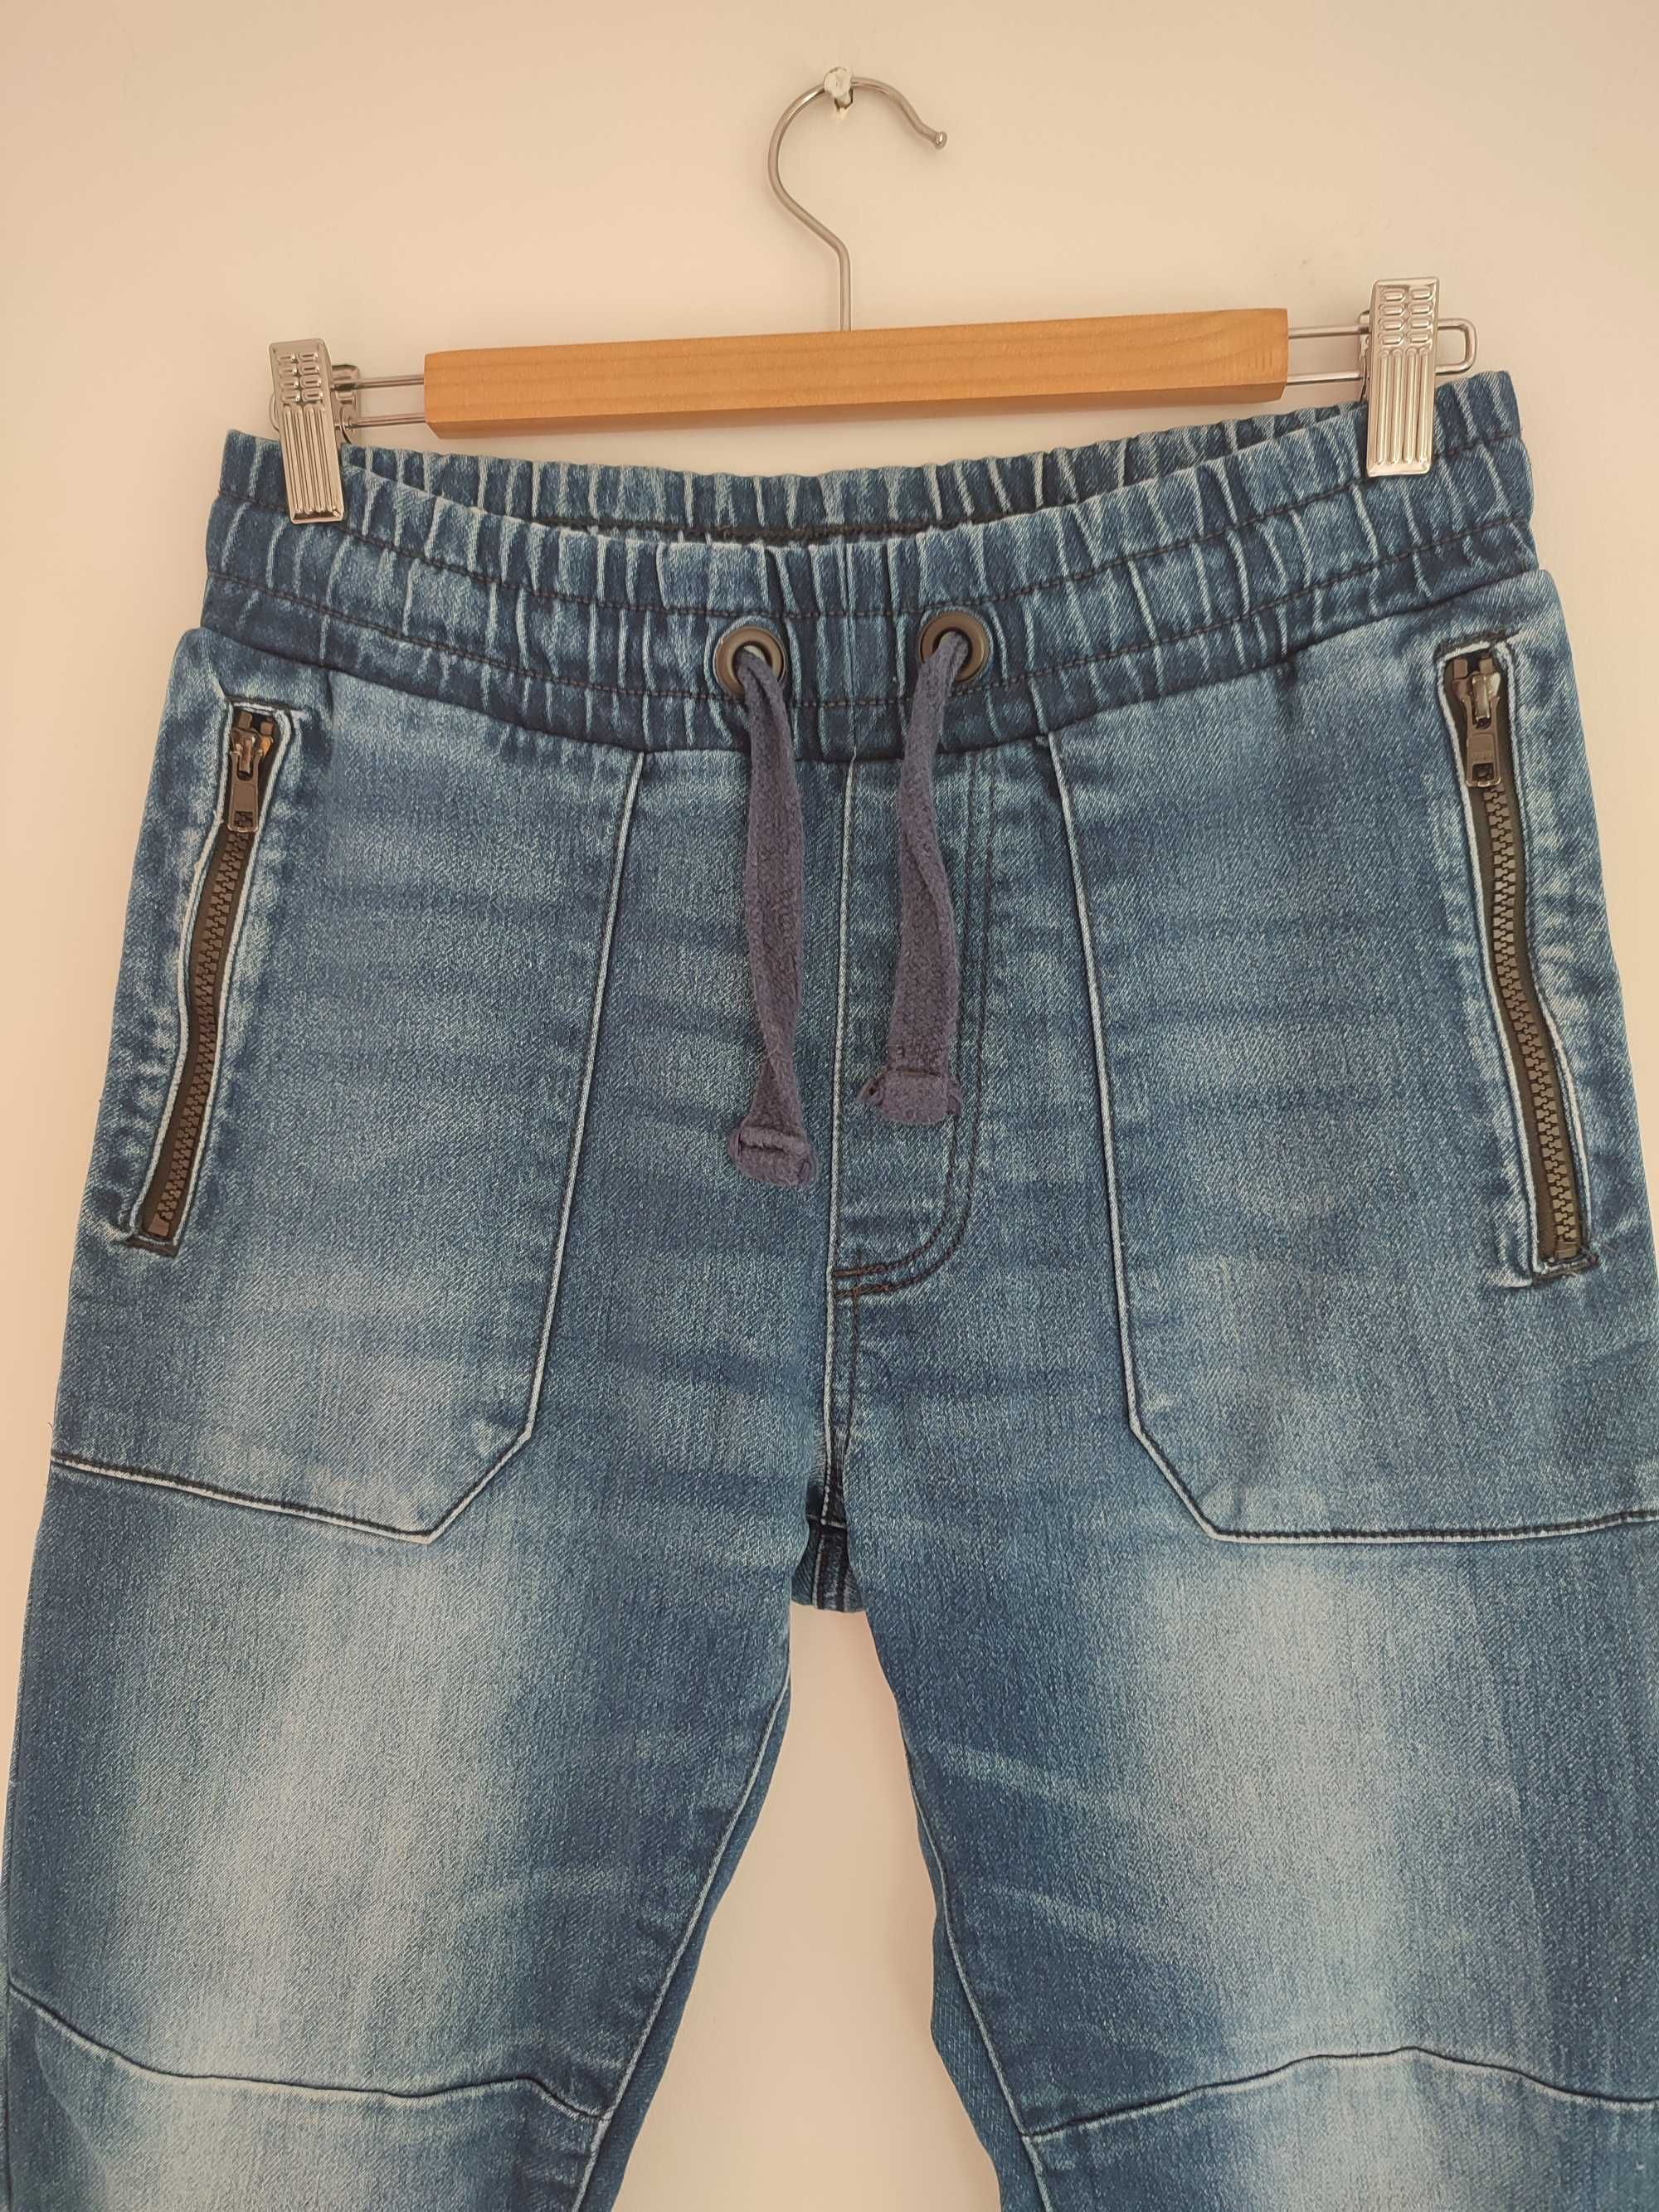 Spodnie męskie jeansowe rozm. XS/S